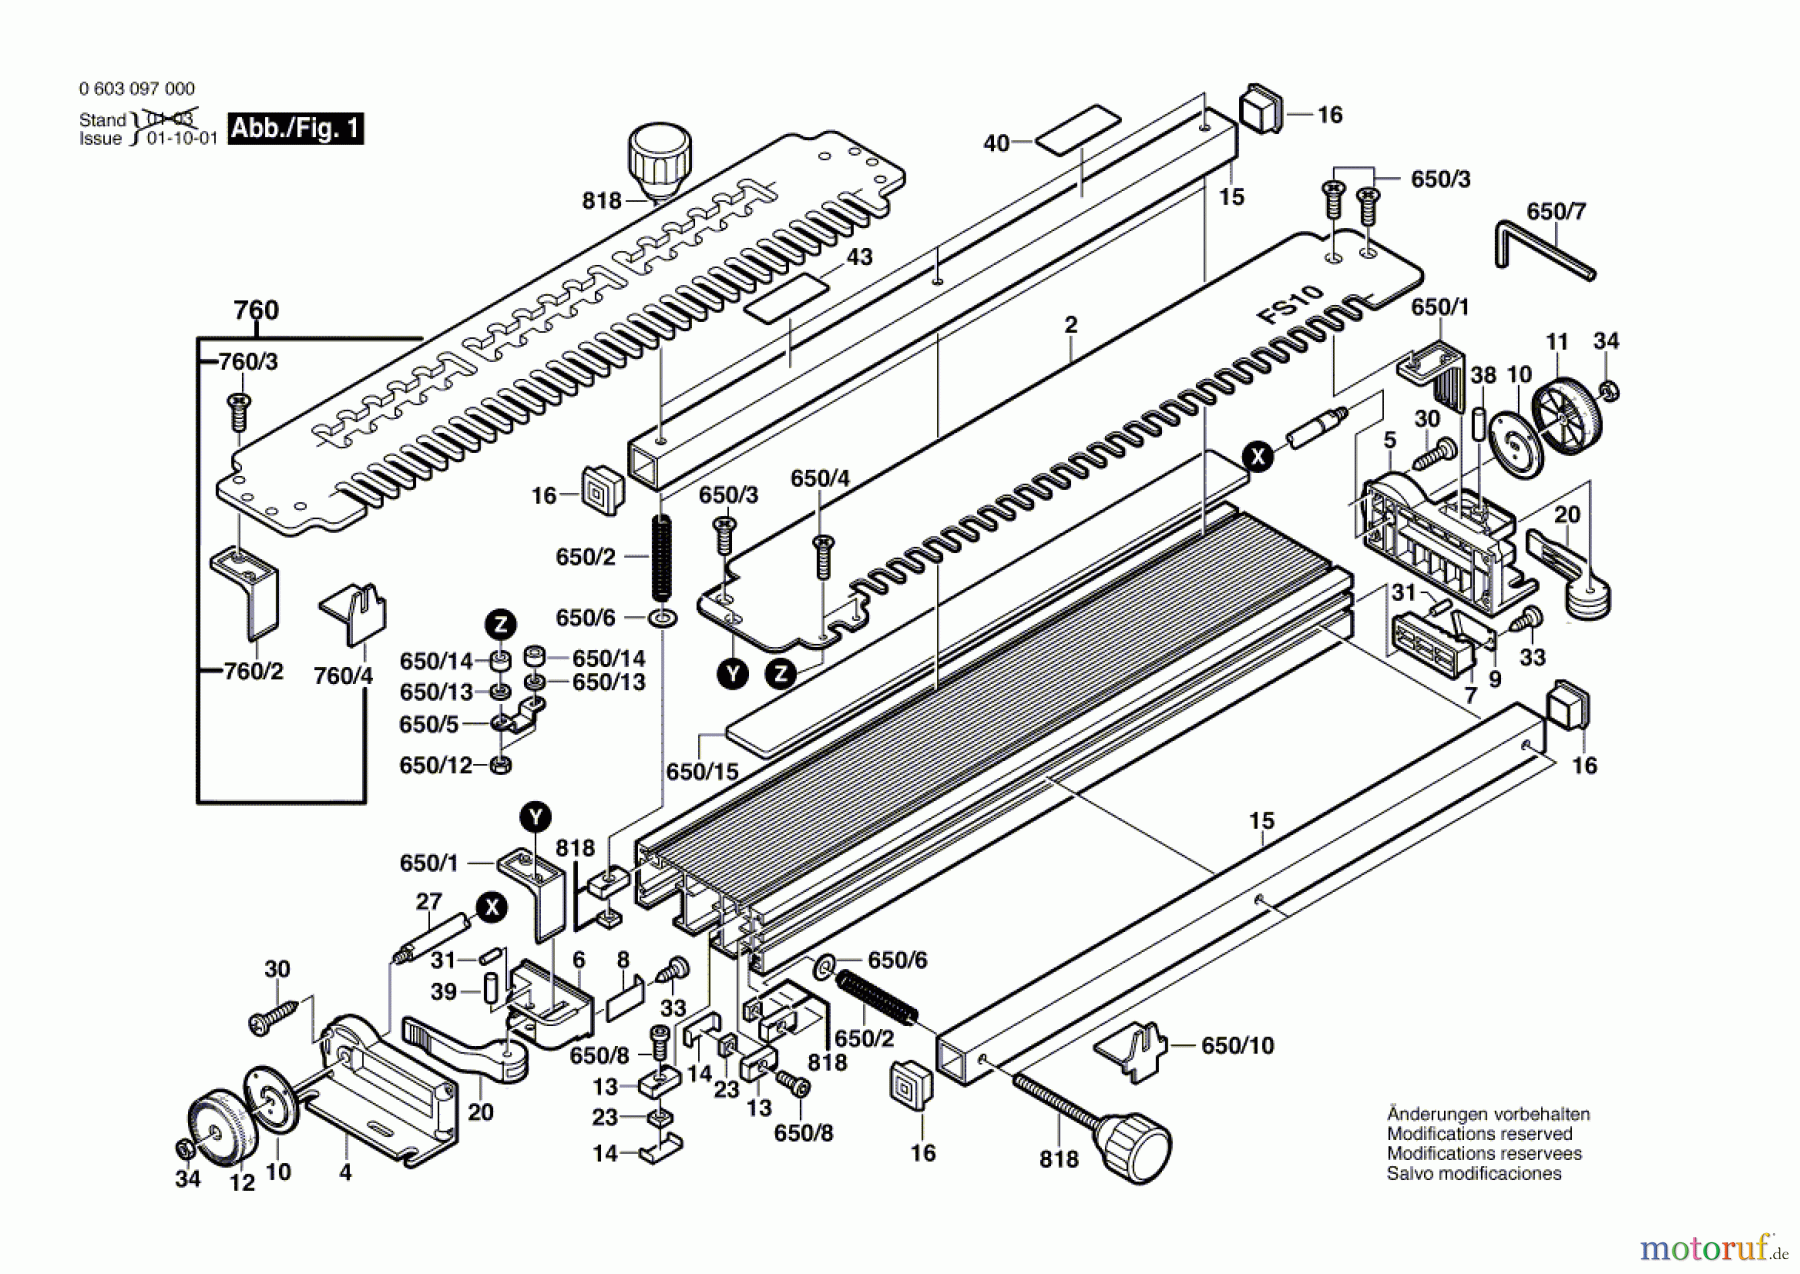  Bosch Werkzeug Zinkenschneidevorrichtung ZF 60 Seite 1